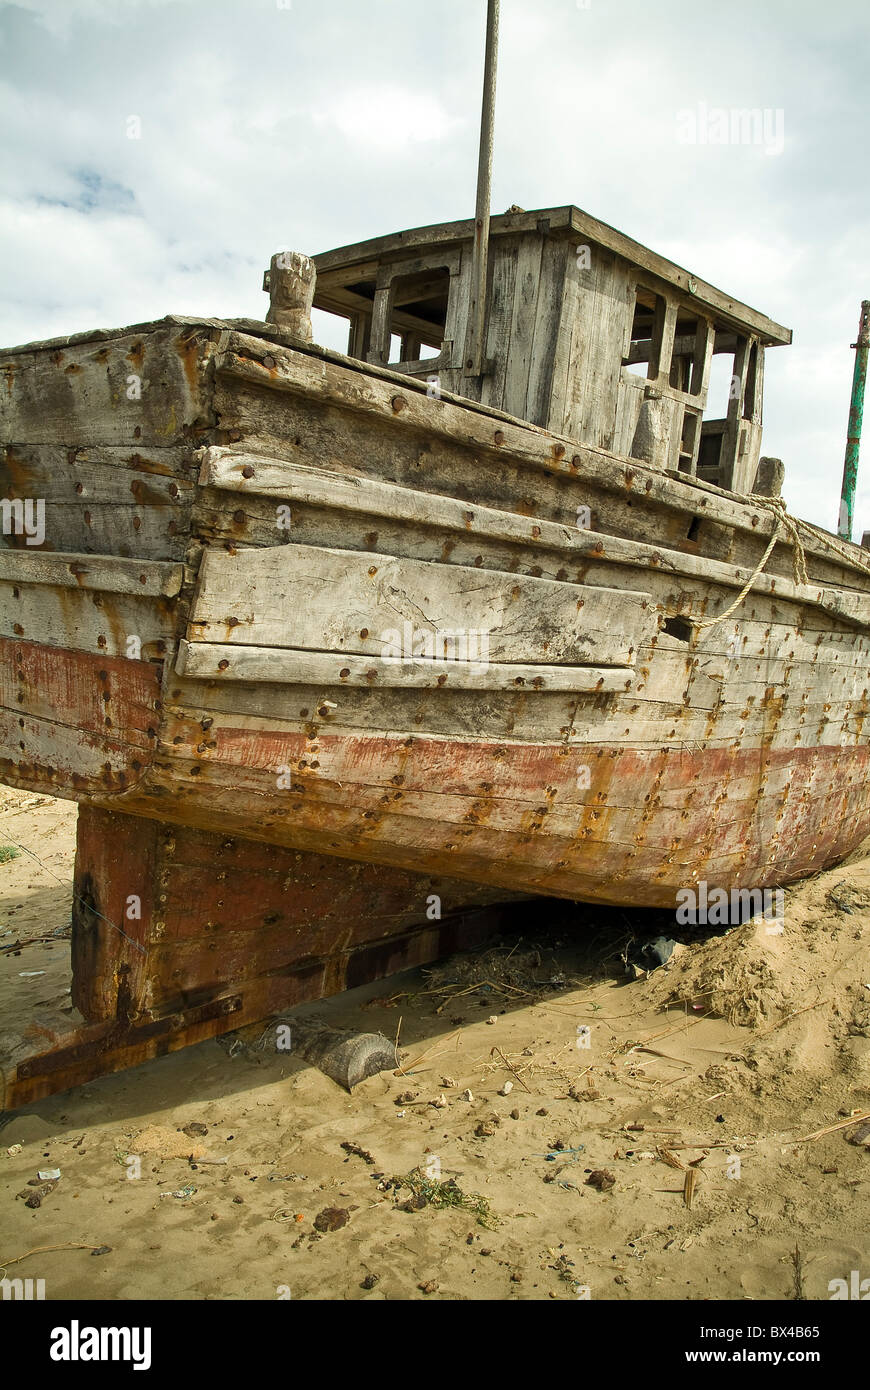 Bateau de pêche abandonné dans un village de pêcheurs sur l'île de Diu, Inde Banque D'Images